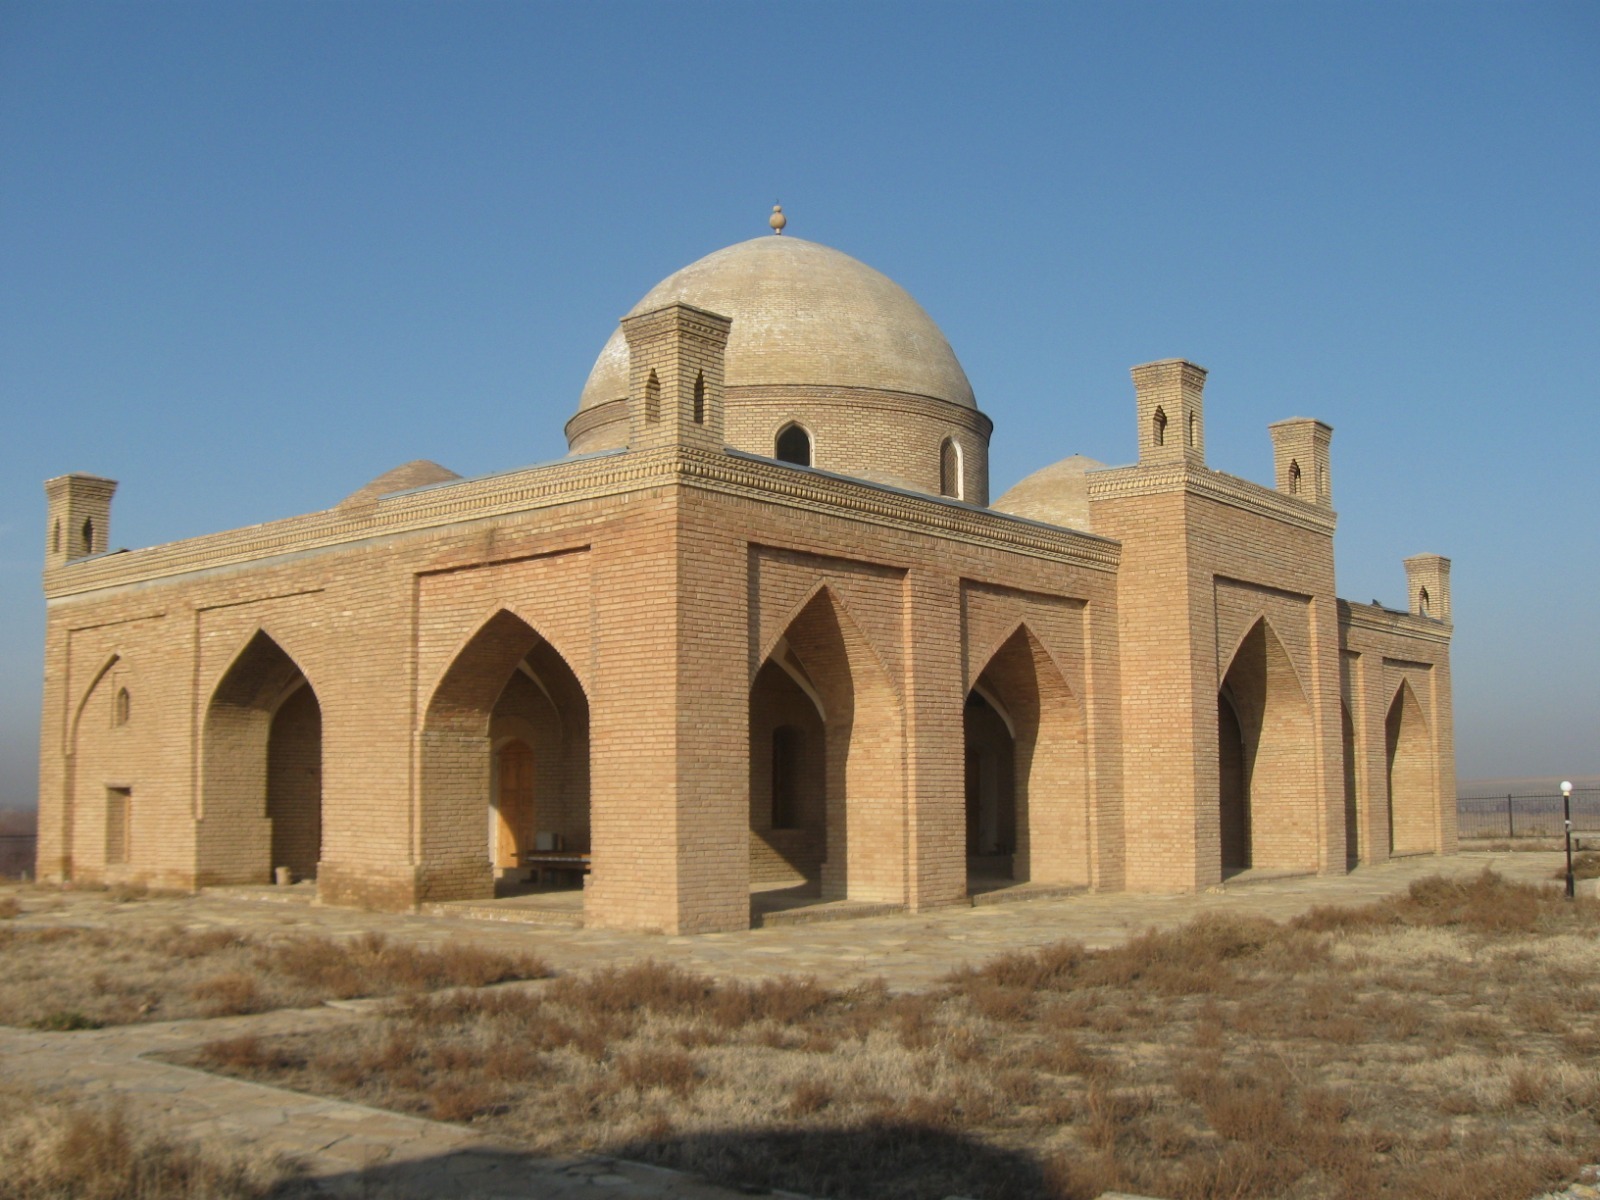 مسجد «ايشان بازار» قزاقستان؛ يادگاري از ميراث تاريخي جاده ابريشم